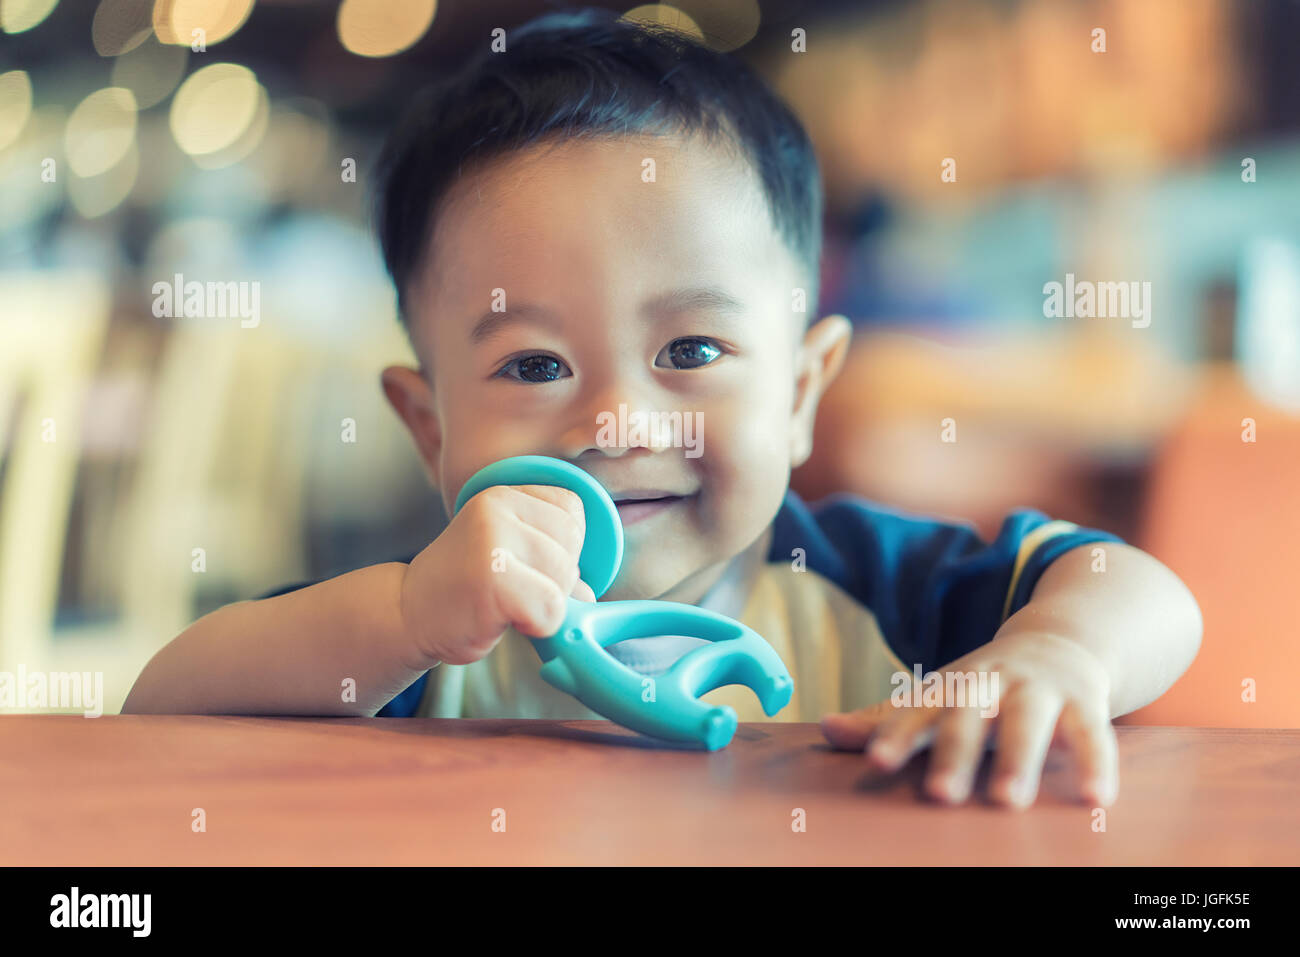 9 mois bébé garçon asiatique de sucer sa bite en caoutchouc jouet pour soulage les maux. Banque D'Images